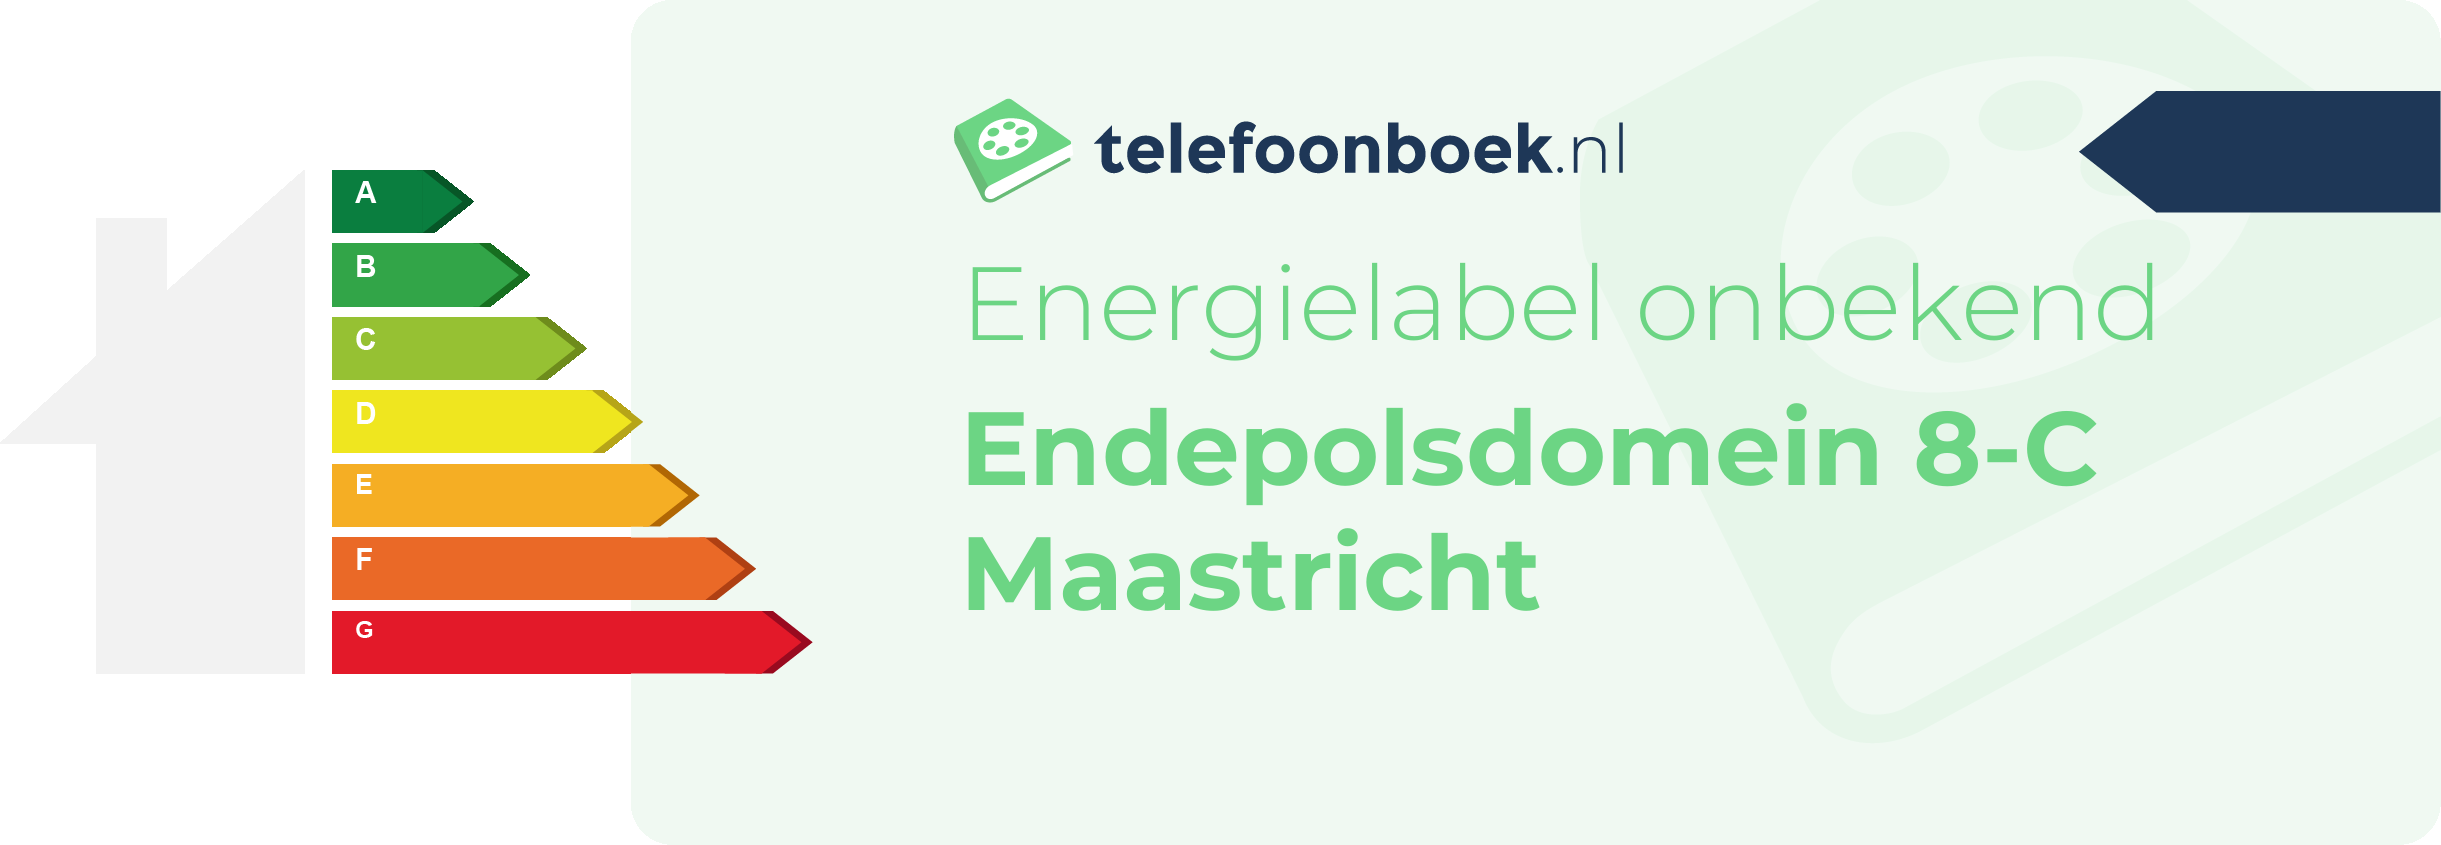 Energielabel Endepolsdomein 8-C Maastricht